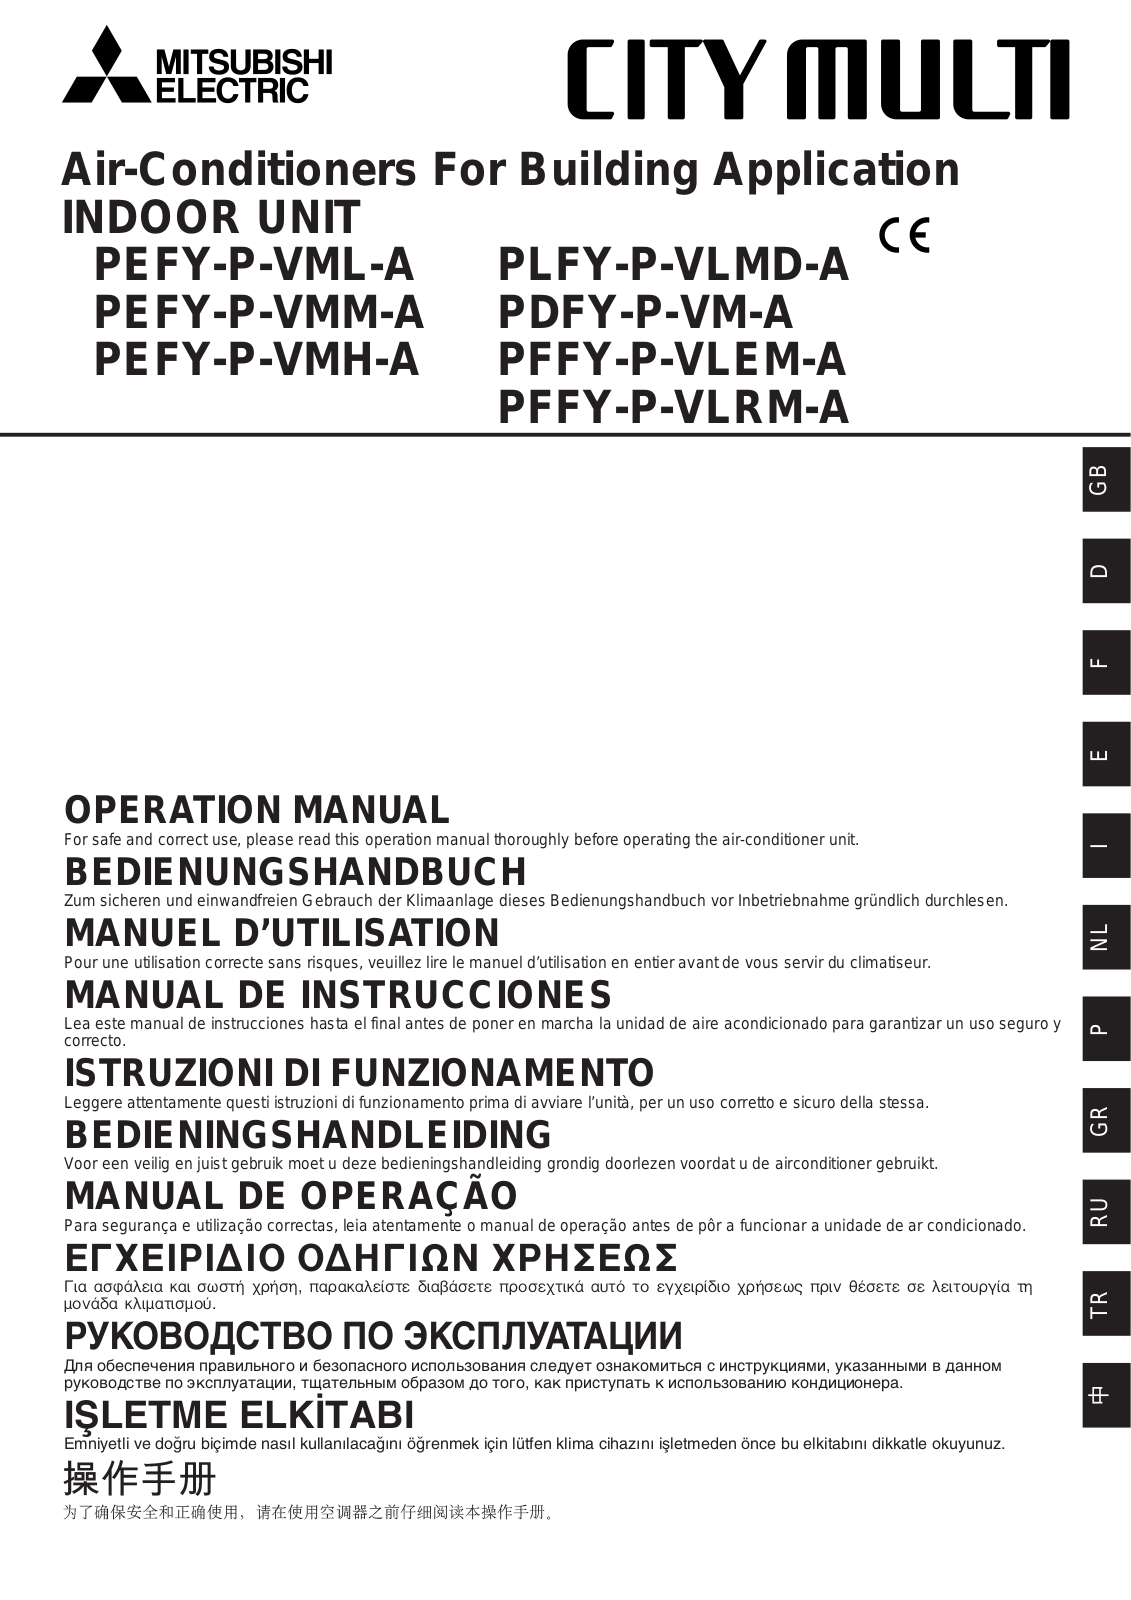 Mitsubishi PEFY-P-VML-A, PEFY-P-VMM-A, PEFY-P-VMH-A, PLFY-P-VLMD-A, PDFY-P-VM-A Installation Manual